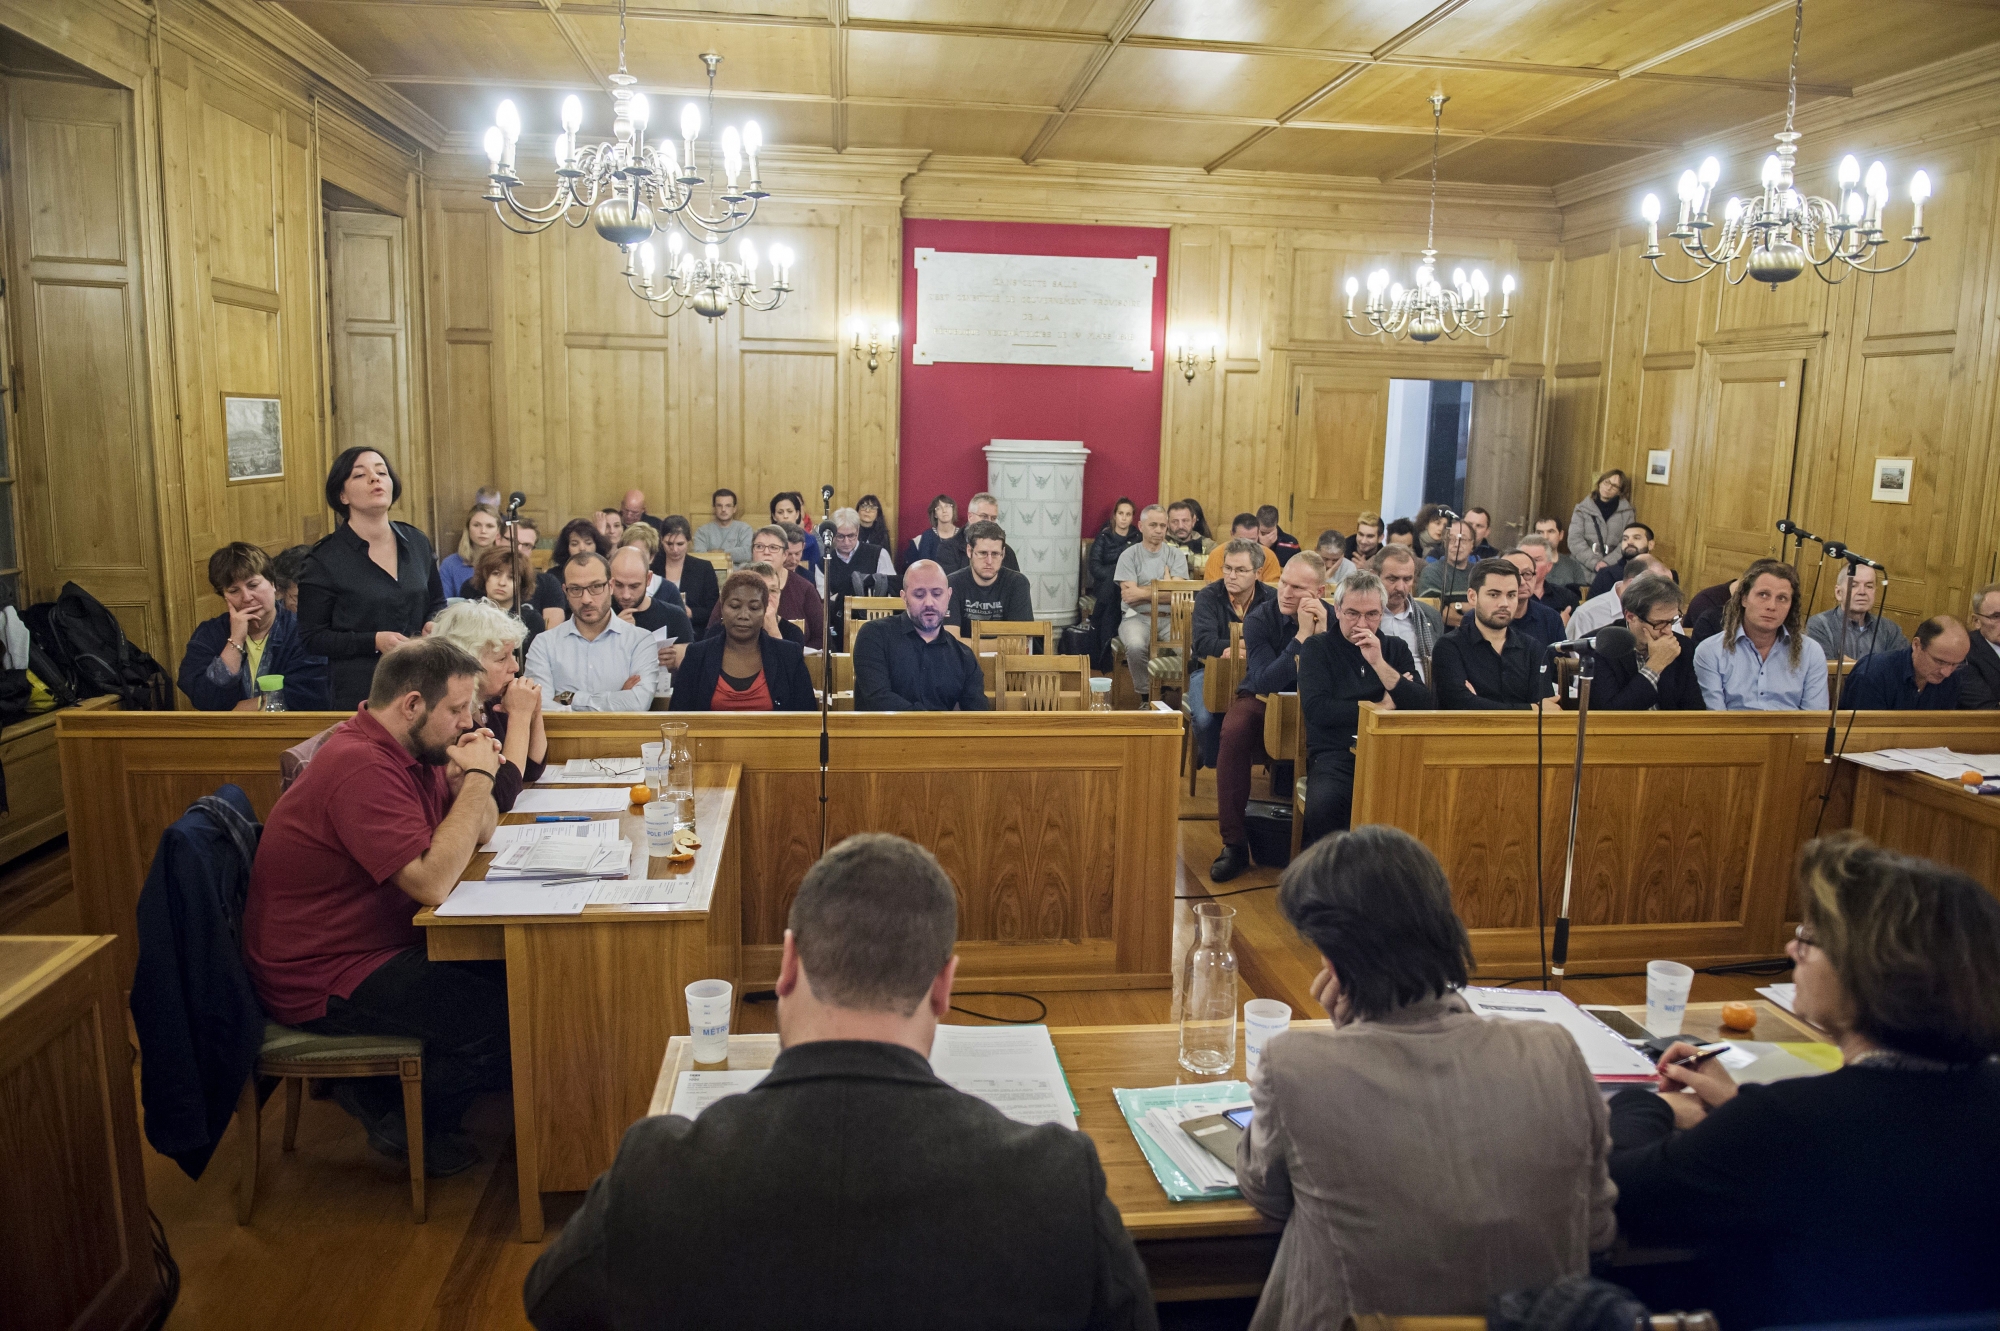 Lundi 18 mars, le Conseil général de La Chaux-de-Fonds recevra le Conseil d'Etat neuchâtelois. Une séance à huis clos.